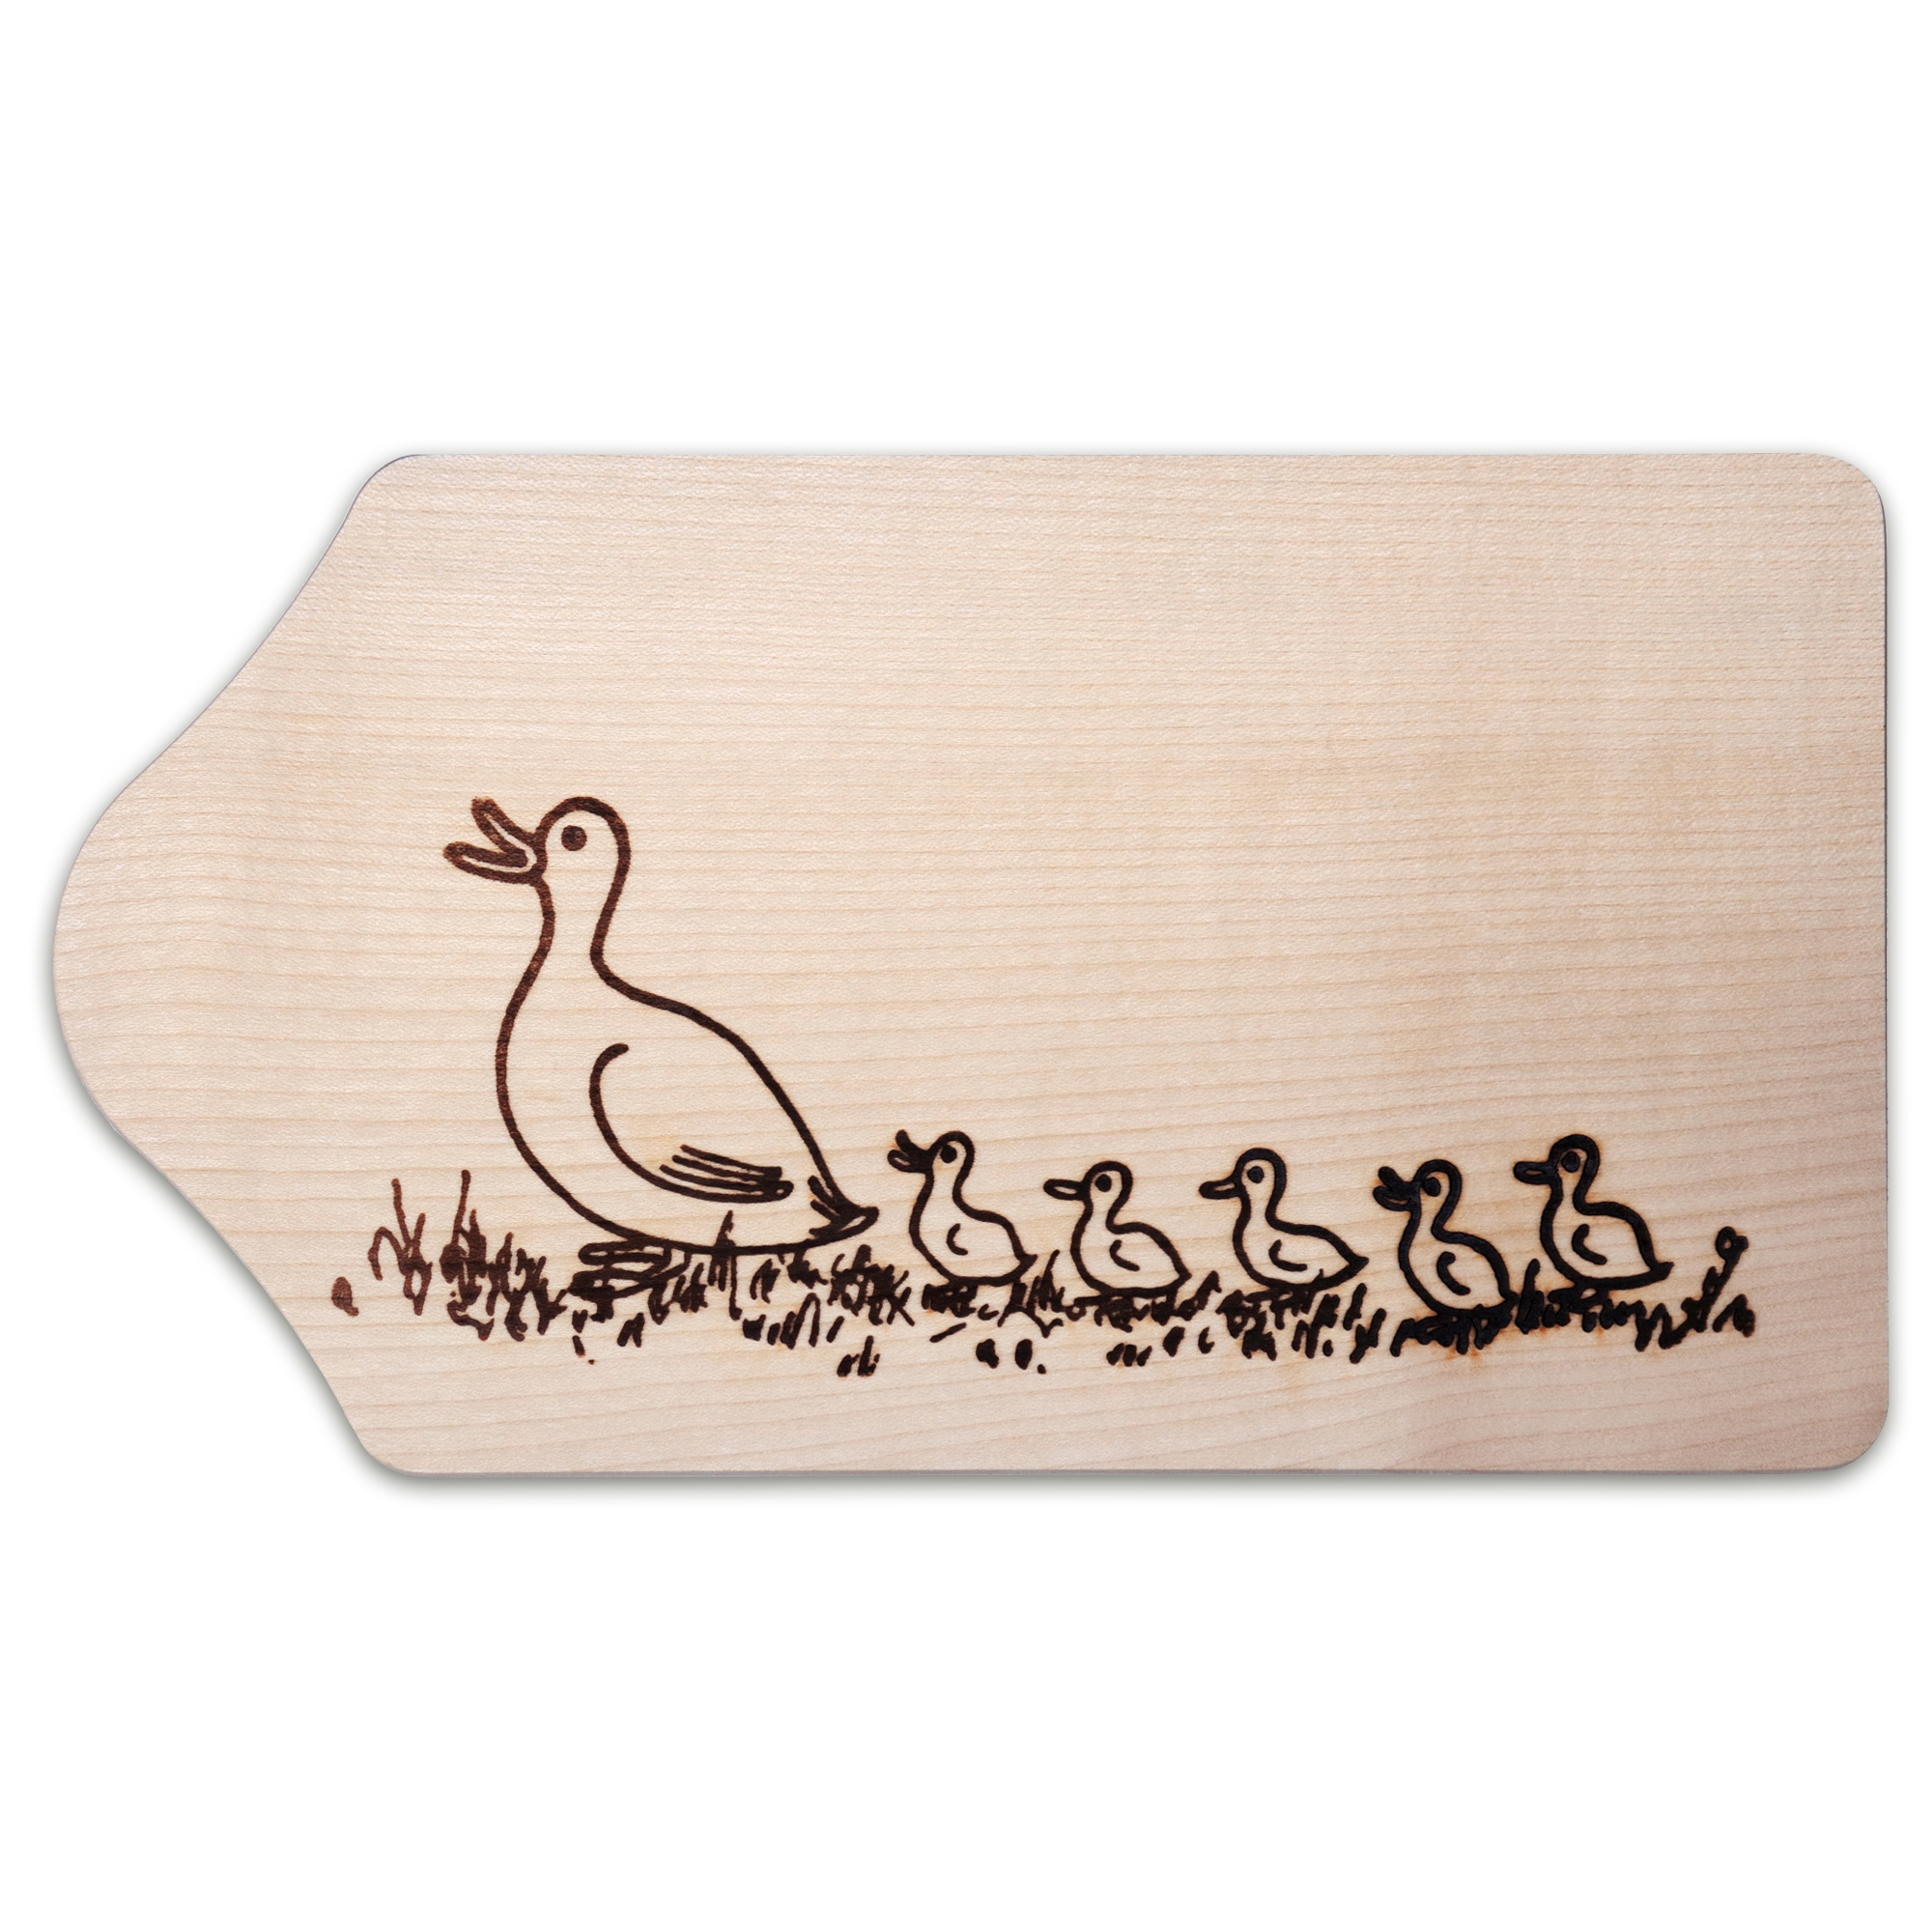 Culinaris - Breakfast board - maple wood - duck family